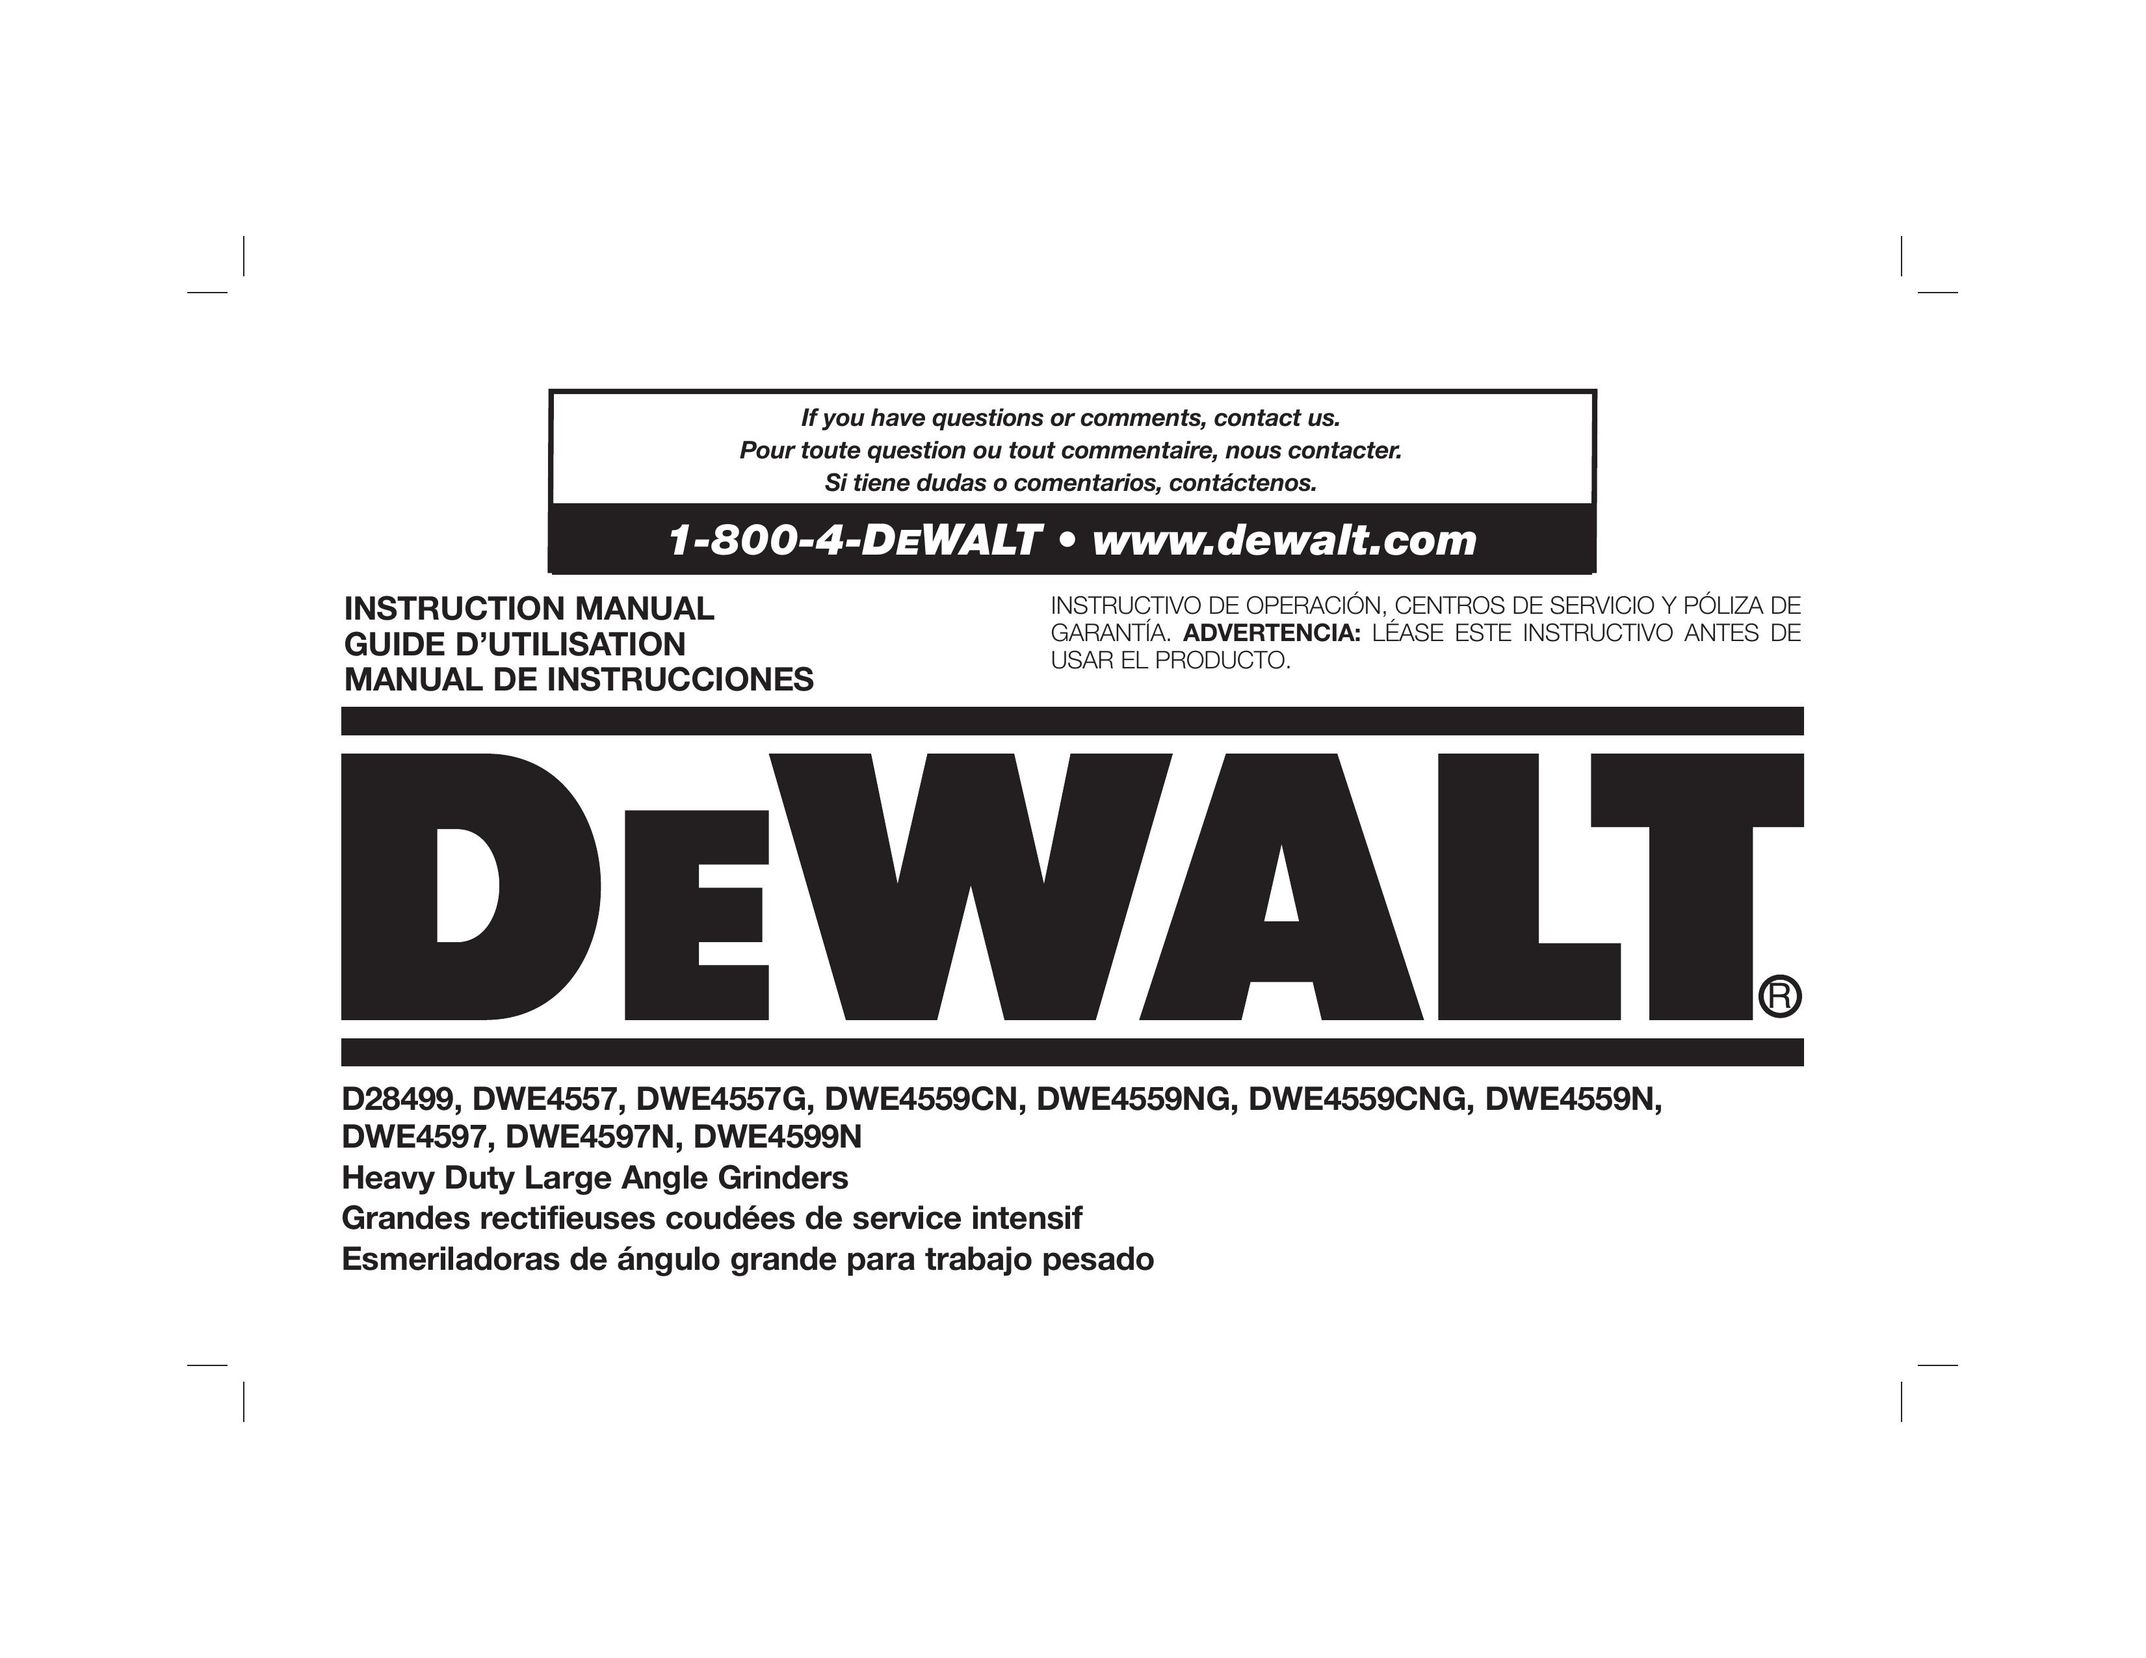 DeWalt DWE4559CNG Grinder User Manual